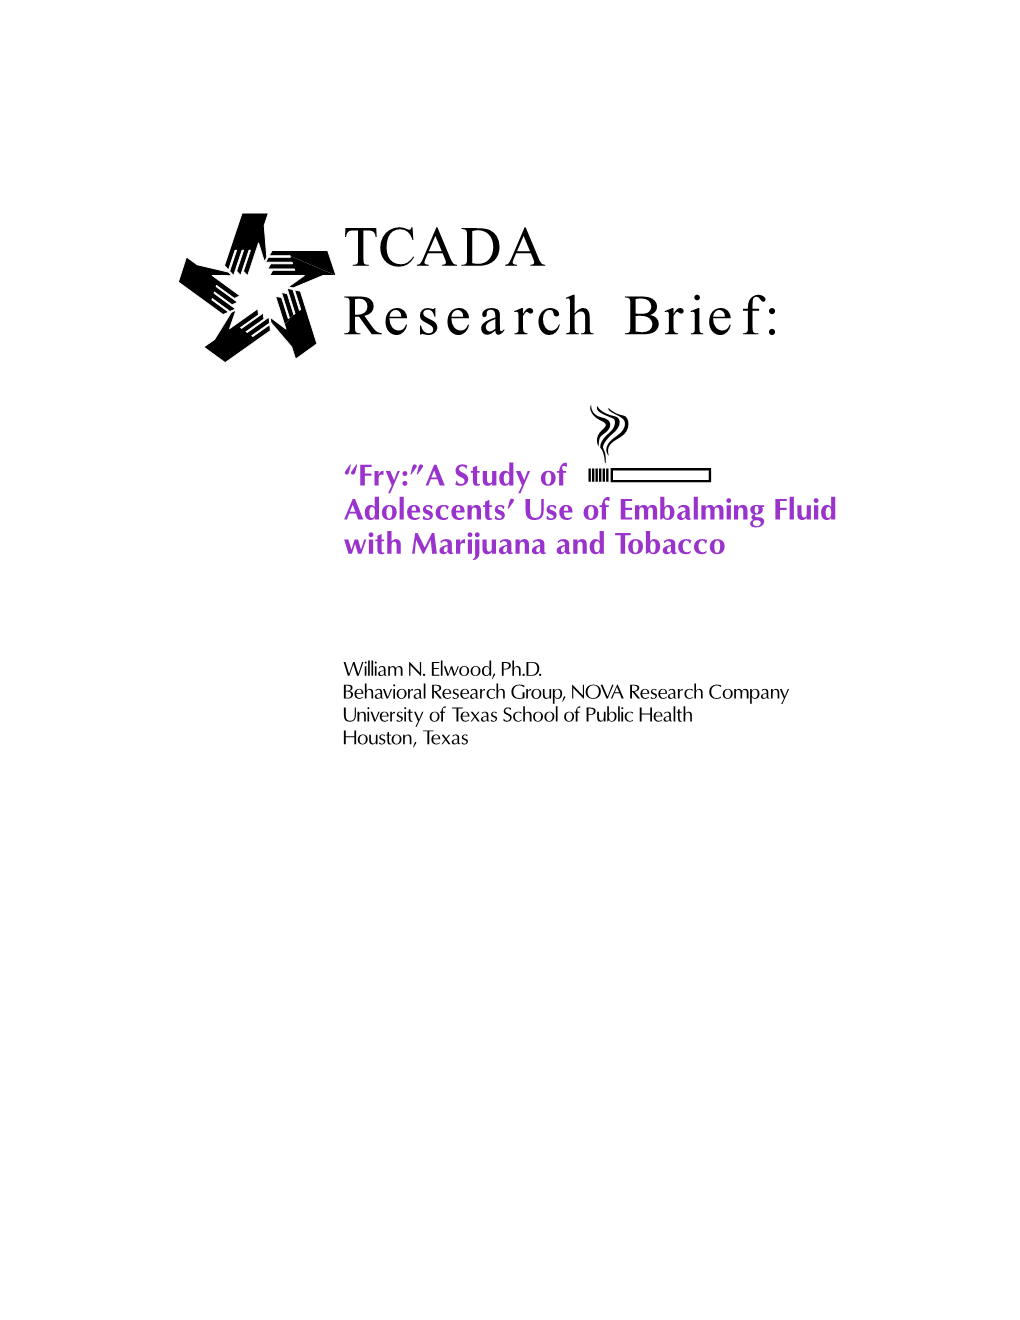 TCADA Research Brief